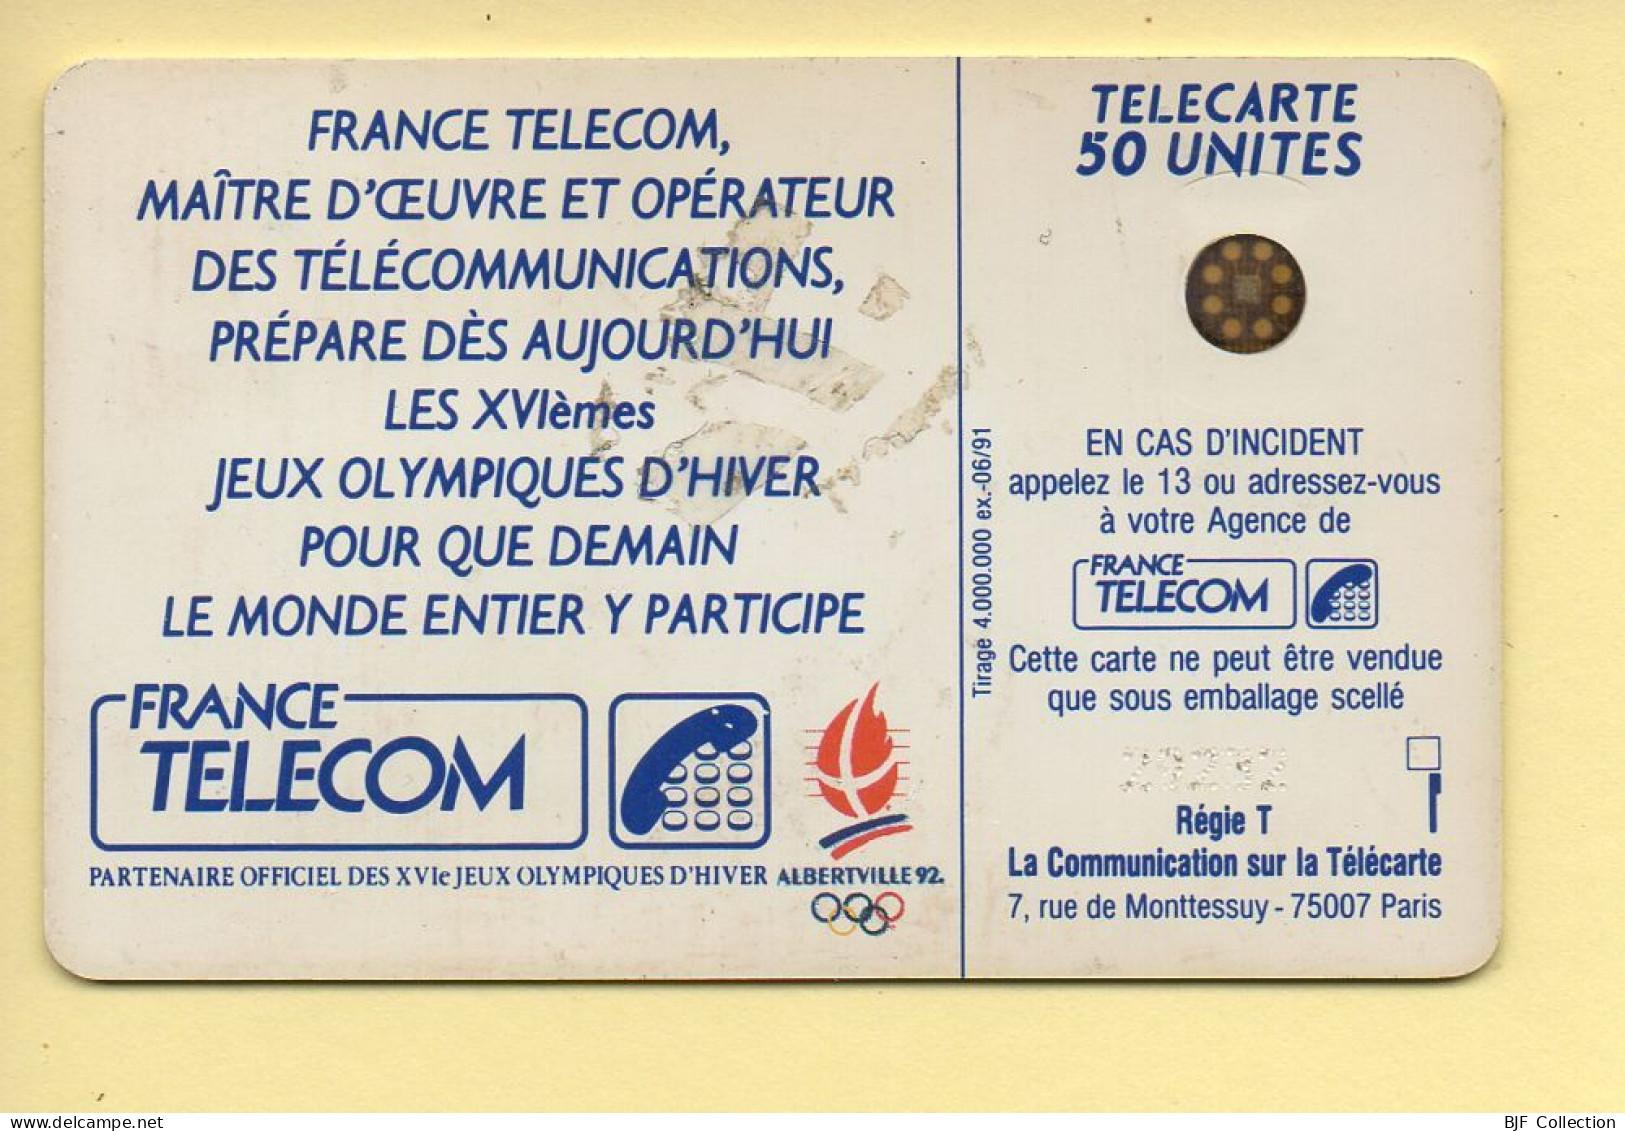 Télécarte 1991 : PATINEUSE N°2 / 50 Unités / Numéro 29232 / 06-91 / Jeux Olympiques D'Hiver ALBERTVILLE 92 - 1991